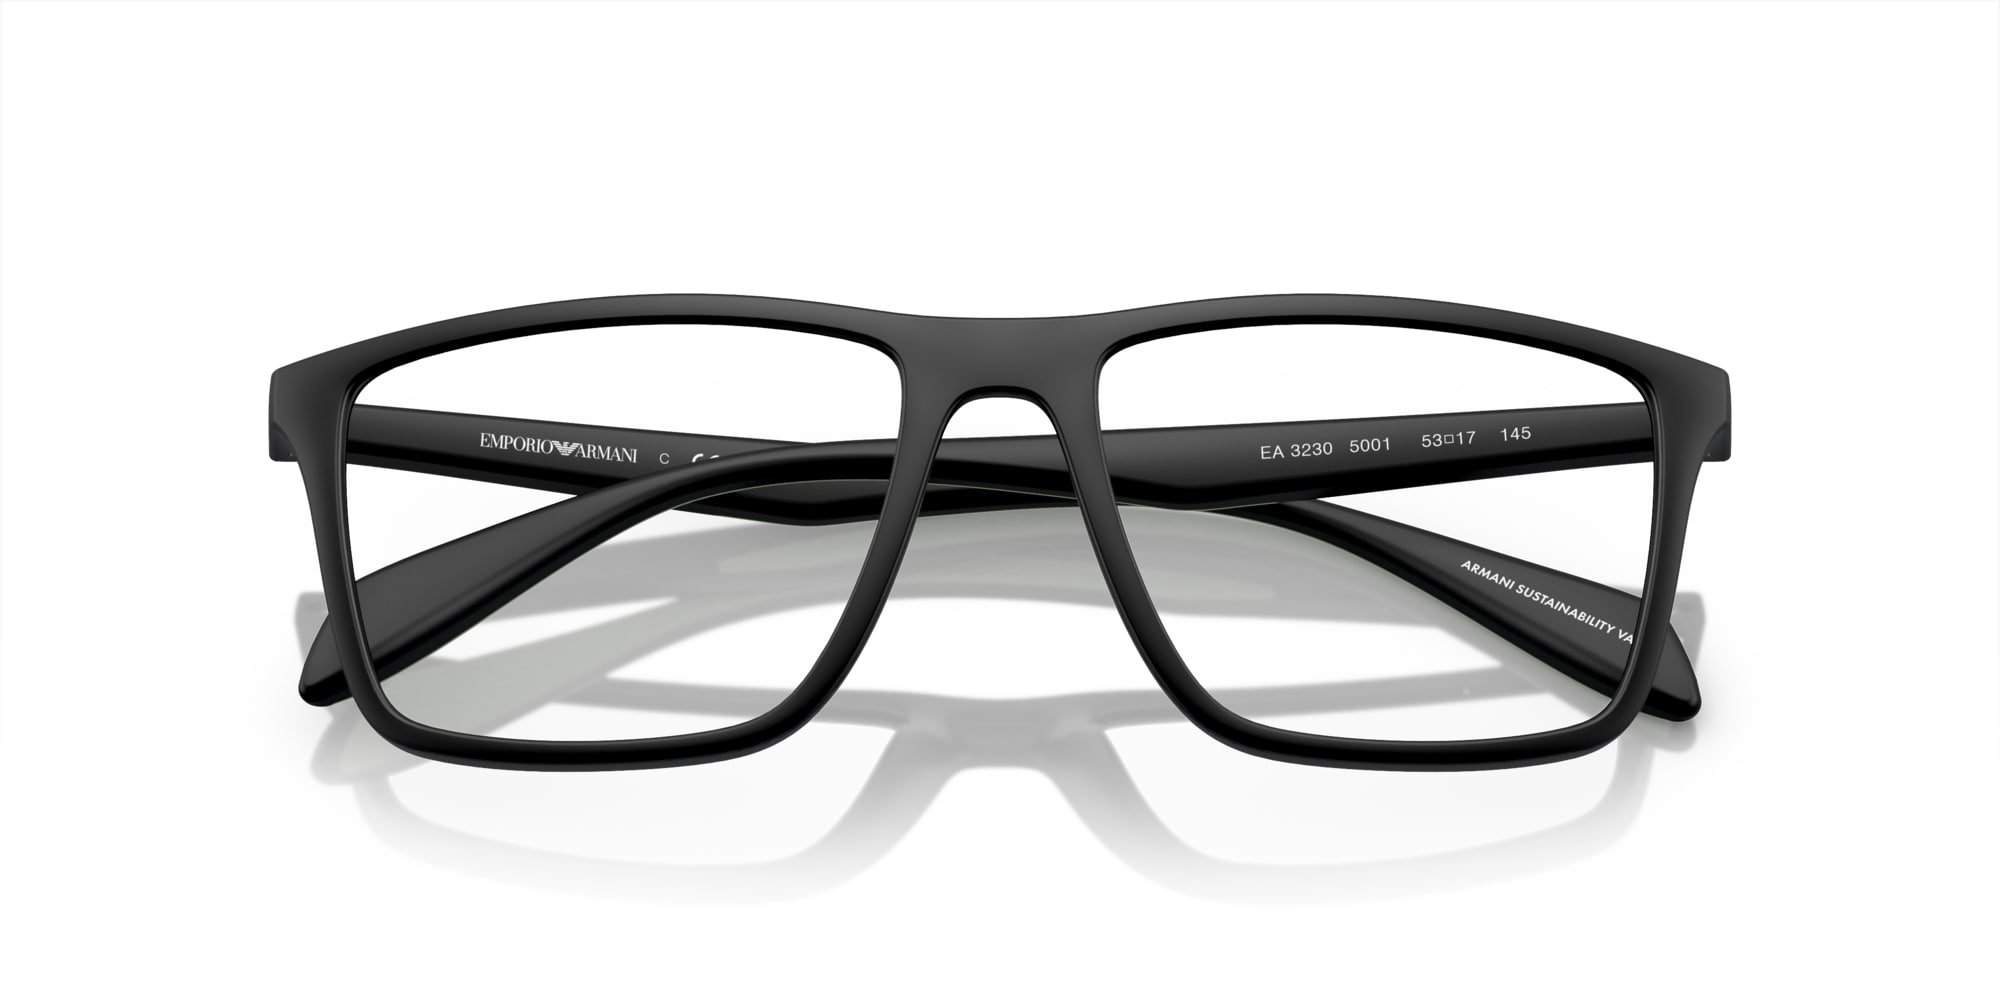 Das Bild zeigt die Korrektionsbrille EA3230 5001 von der Marke Emporio Armani in Schwarz.